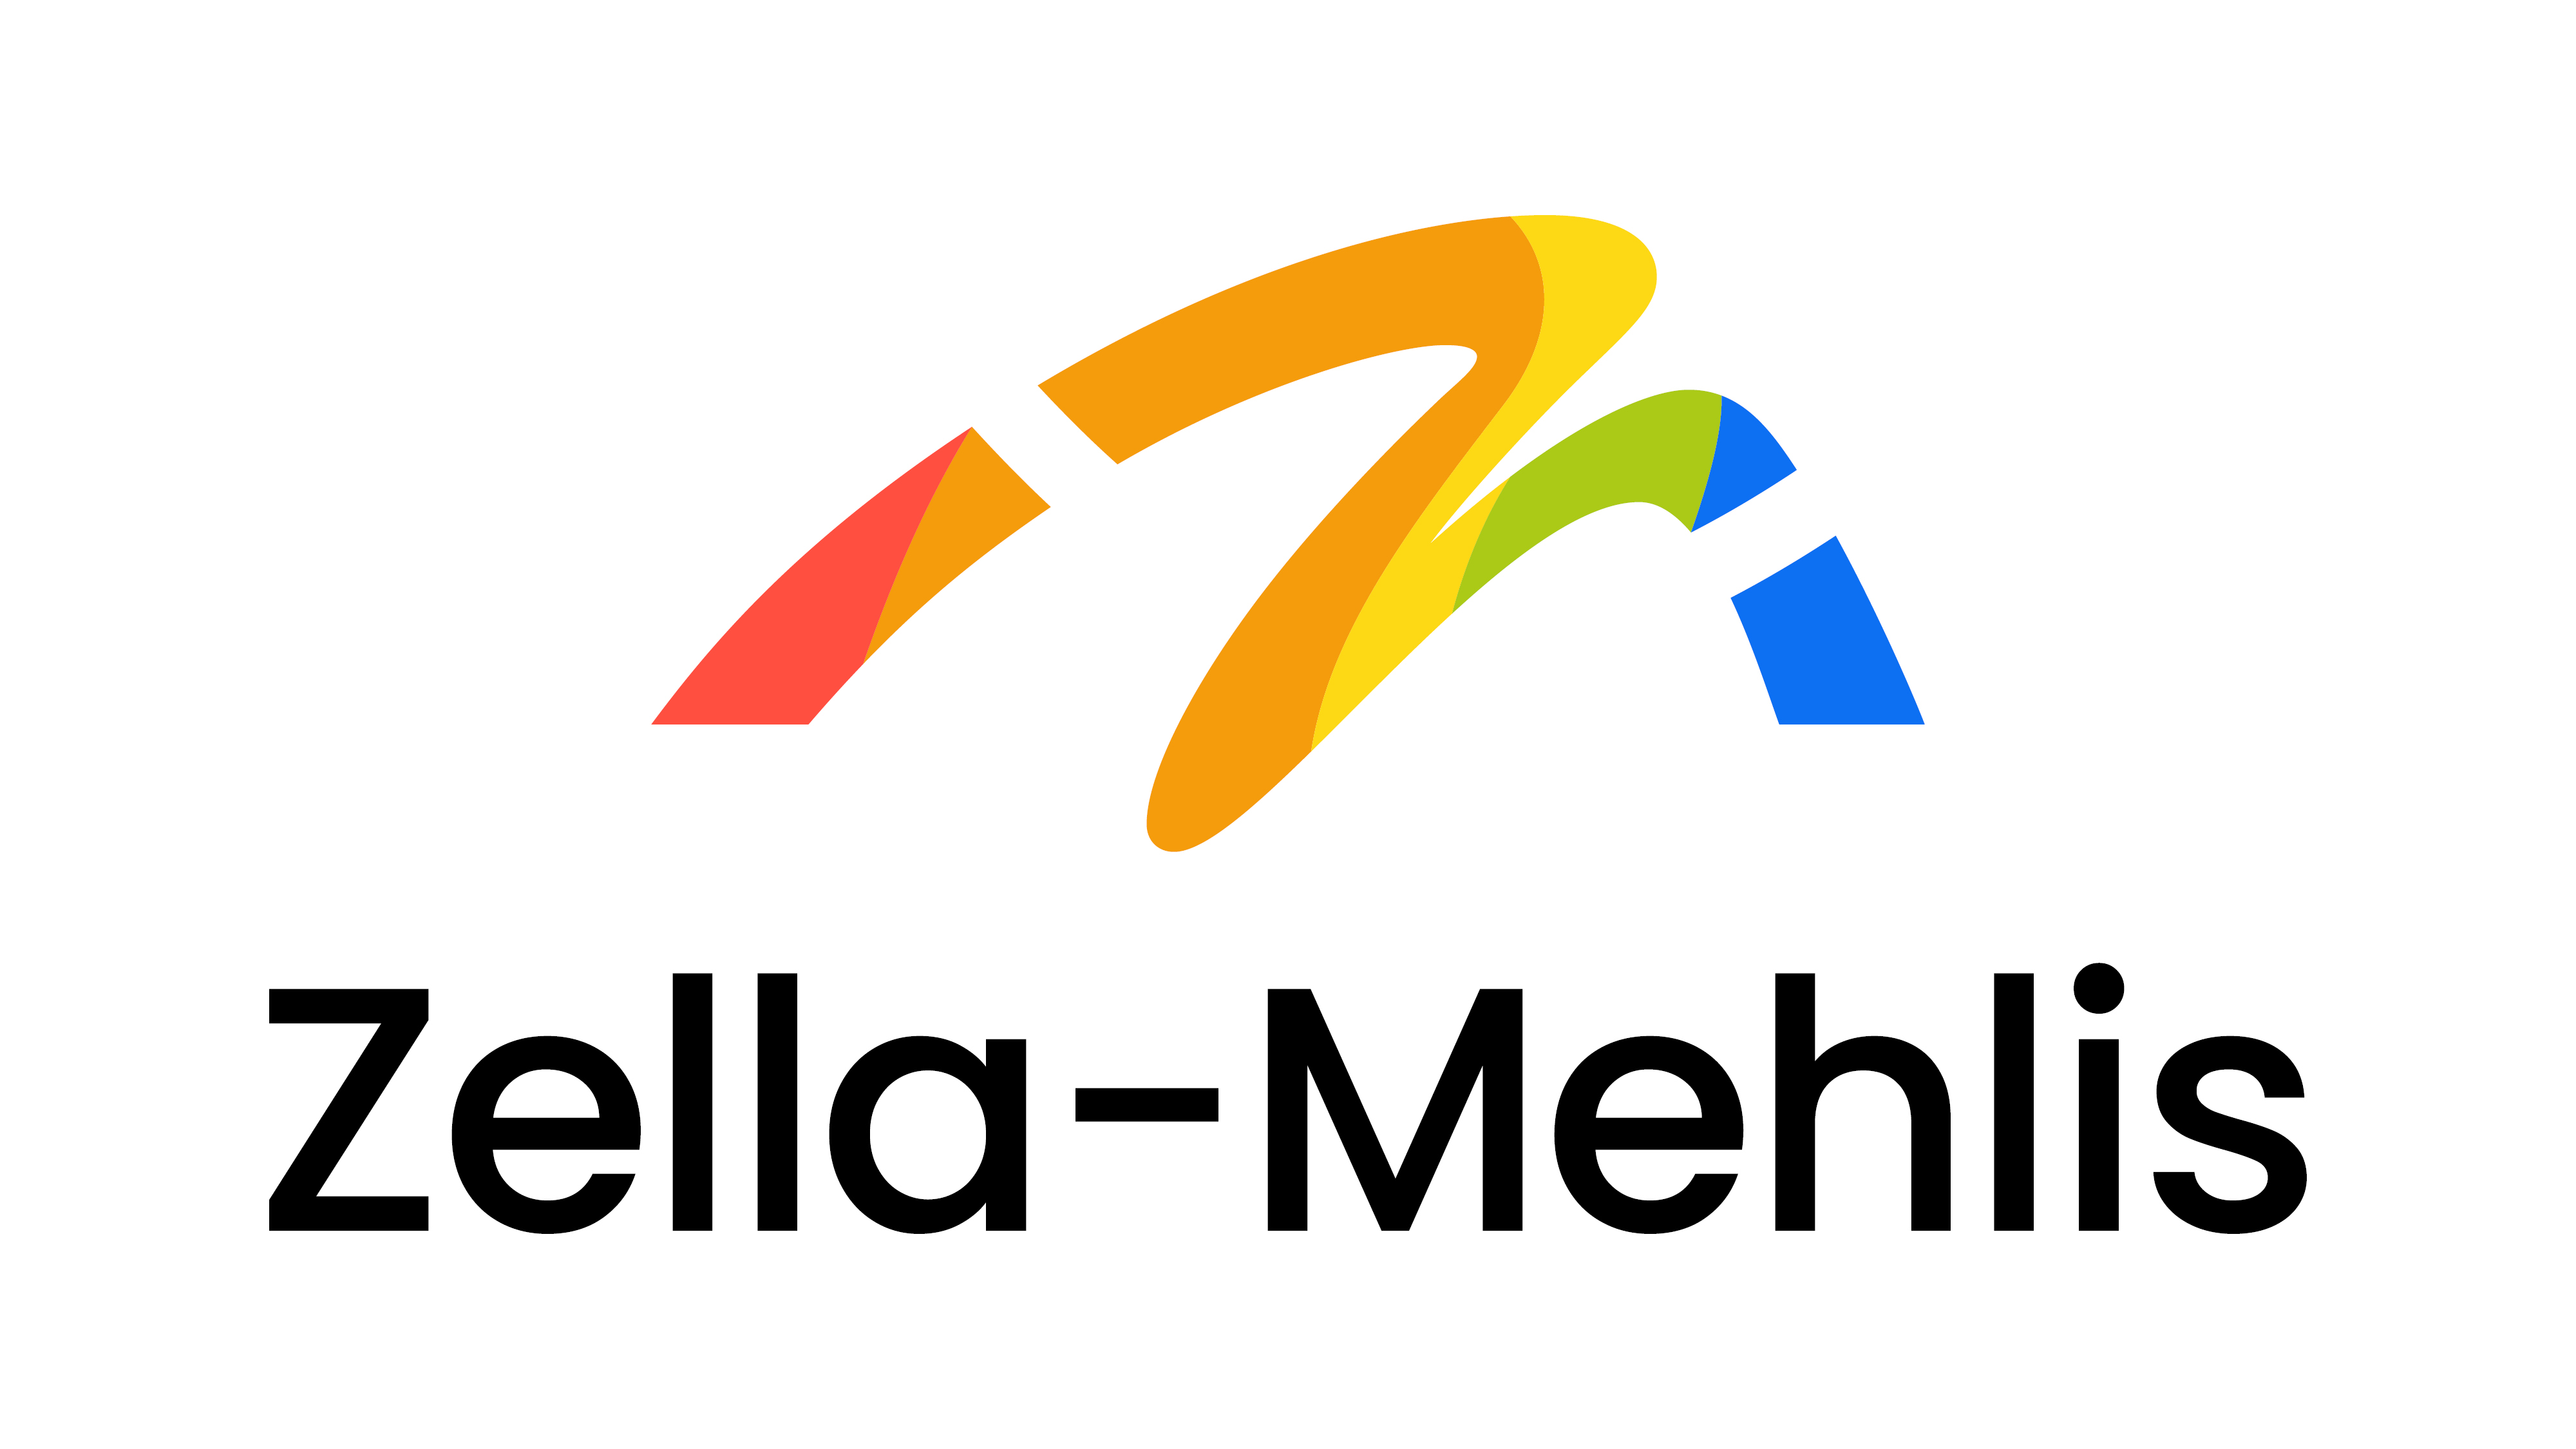 Zella-Mehlis